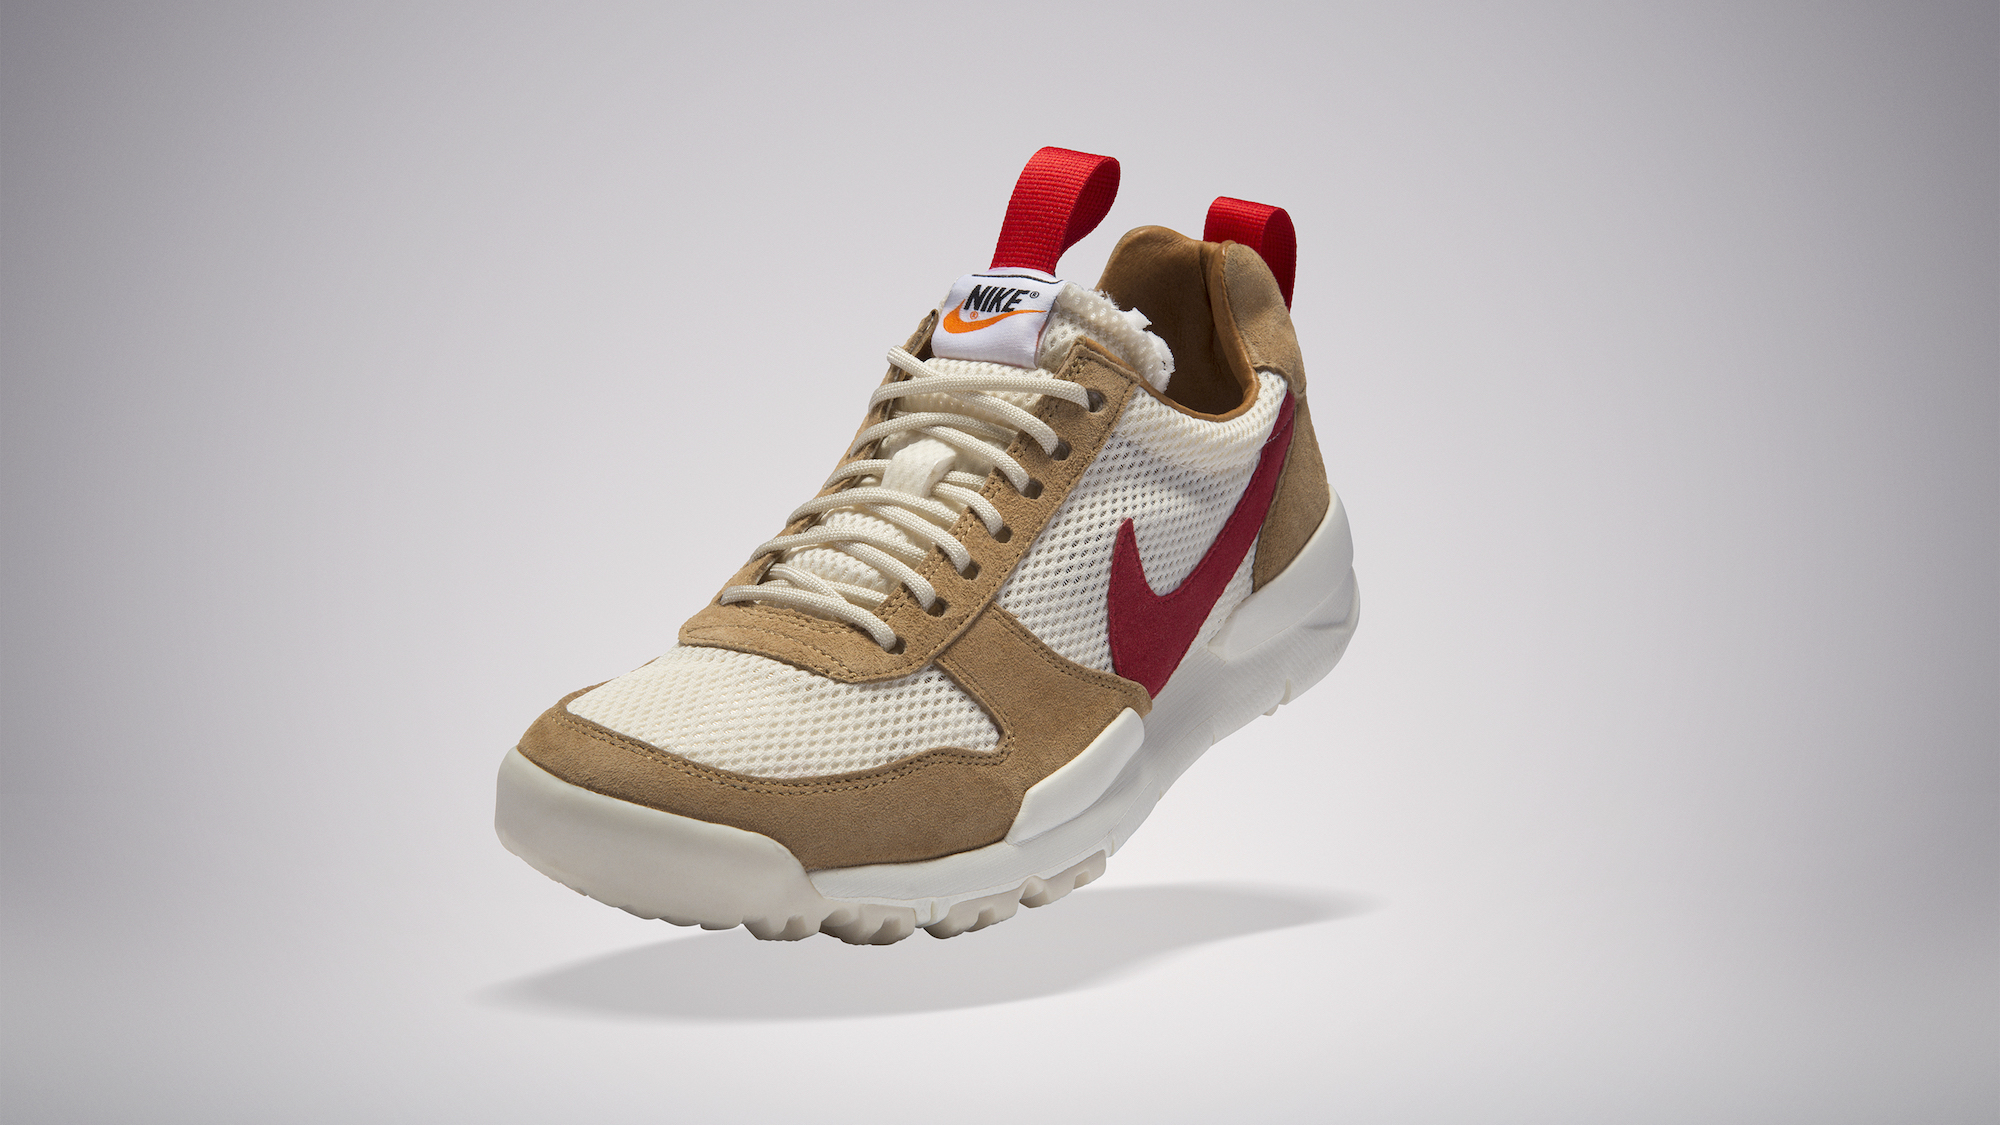 Tom Sachs x Nike Mars Yard 2.0 : Global 